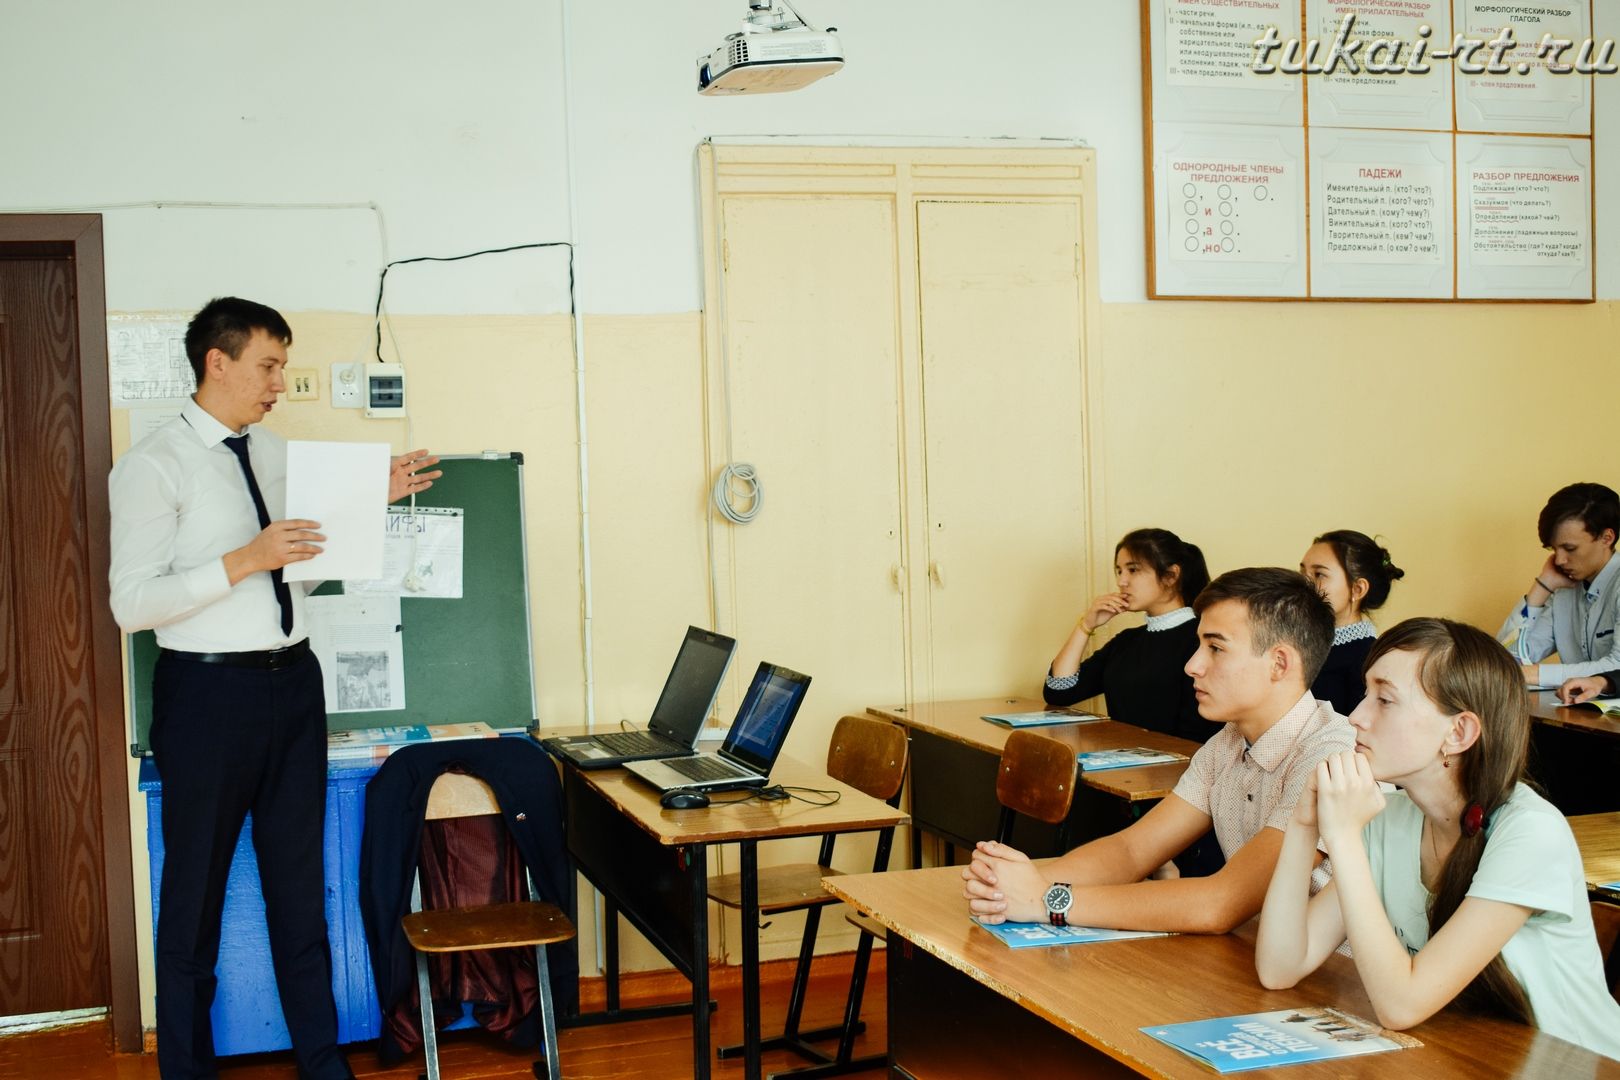 Пенсионный урок прошел в Биклянской школе Тукаевского района ФОТО